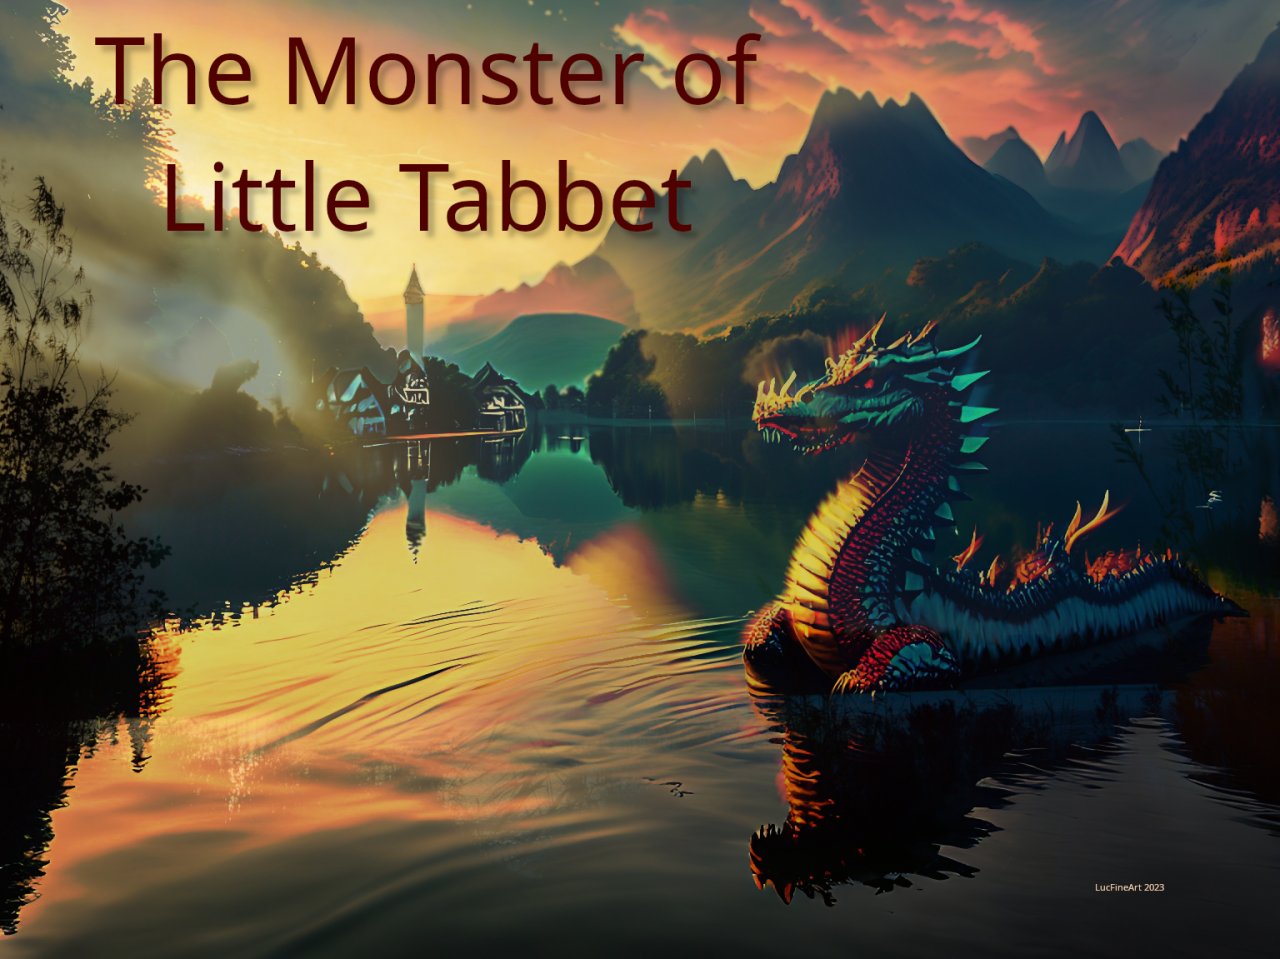 The Monster of Little Tabbet